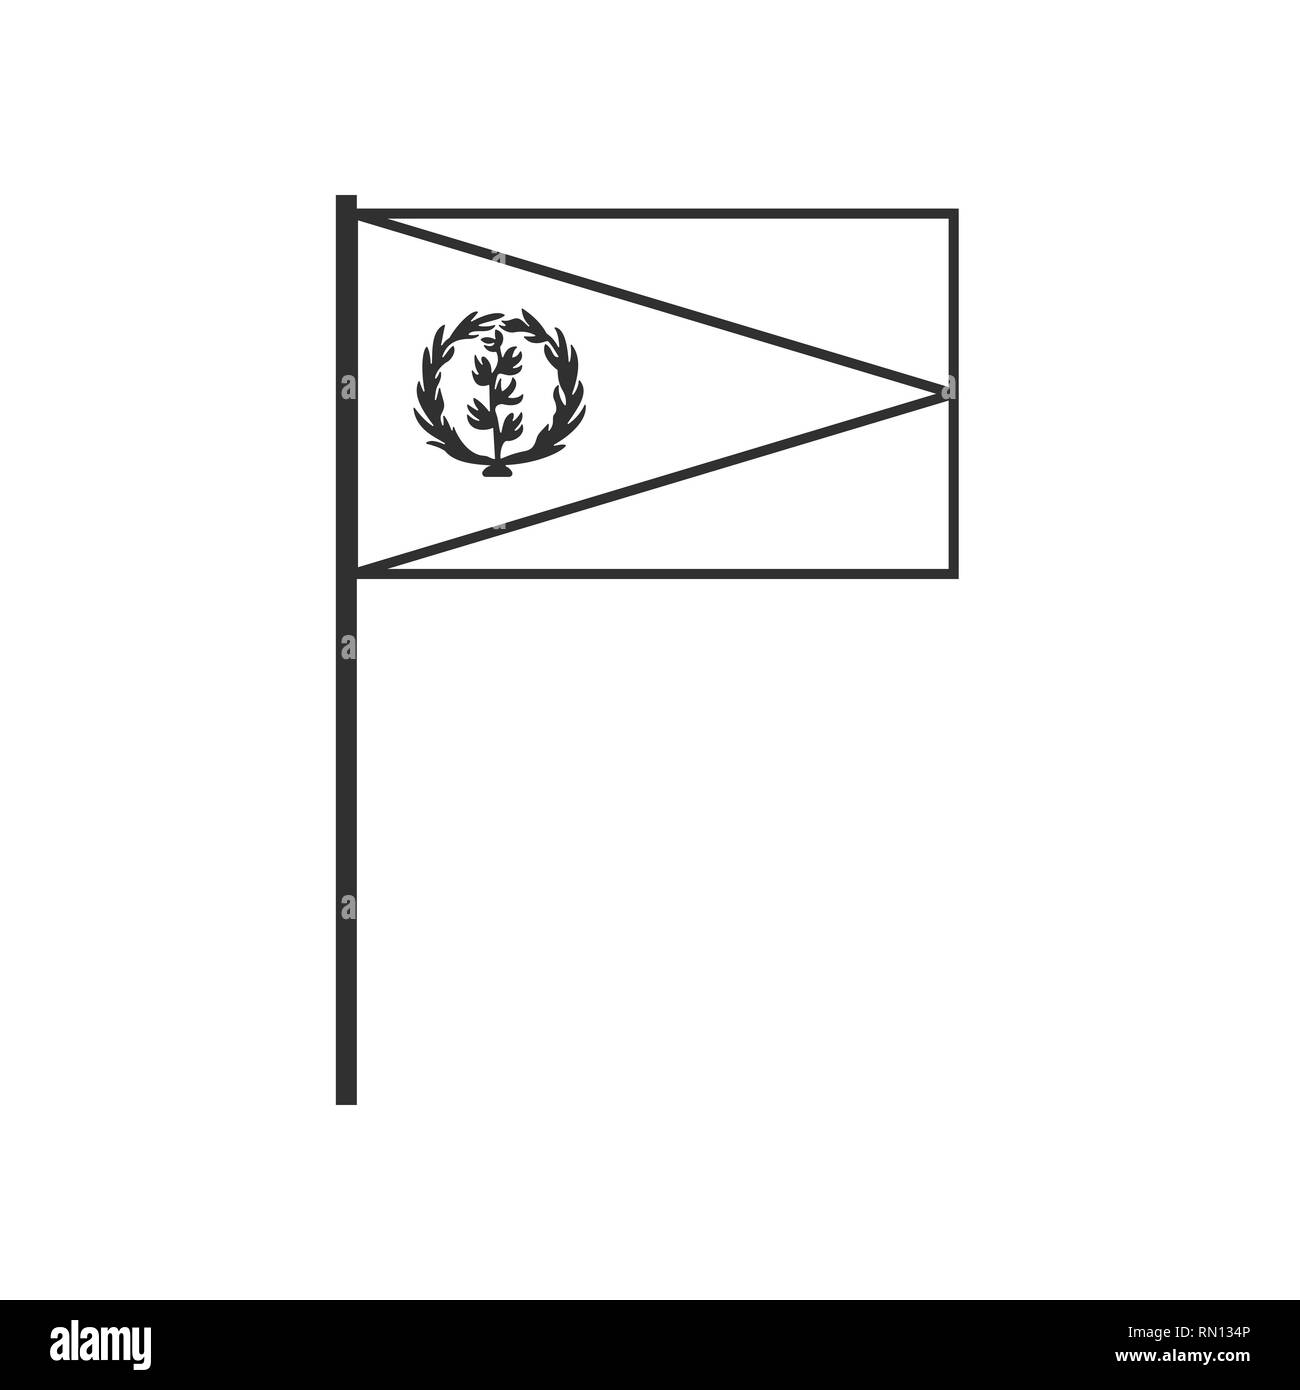 Eritrea Flagge Symbol in schwarzer Umriss flache Bauform. Tag der Unabhängigkeit oder der nationalen Feiertag Konzept. Stock Vektor